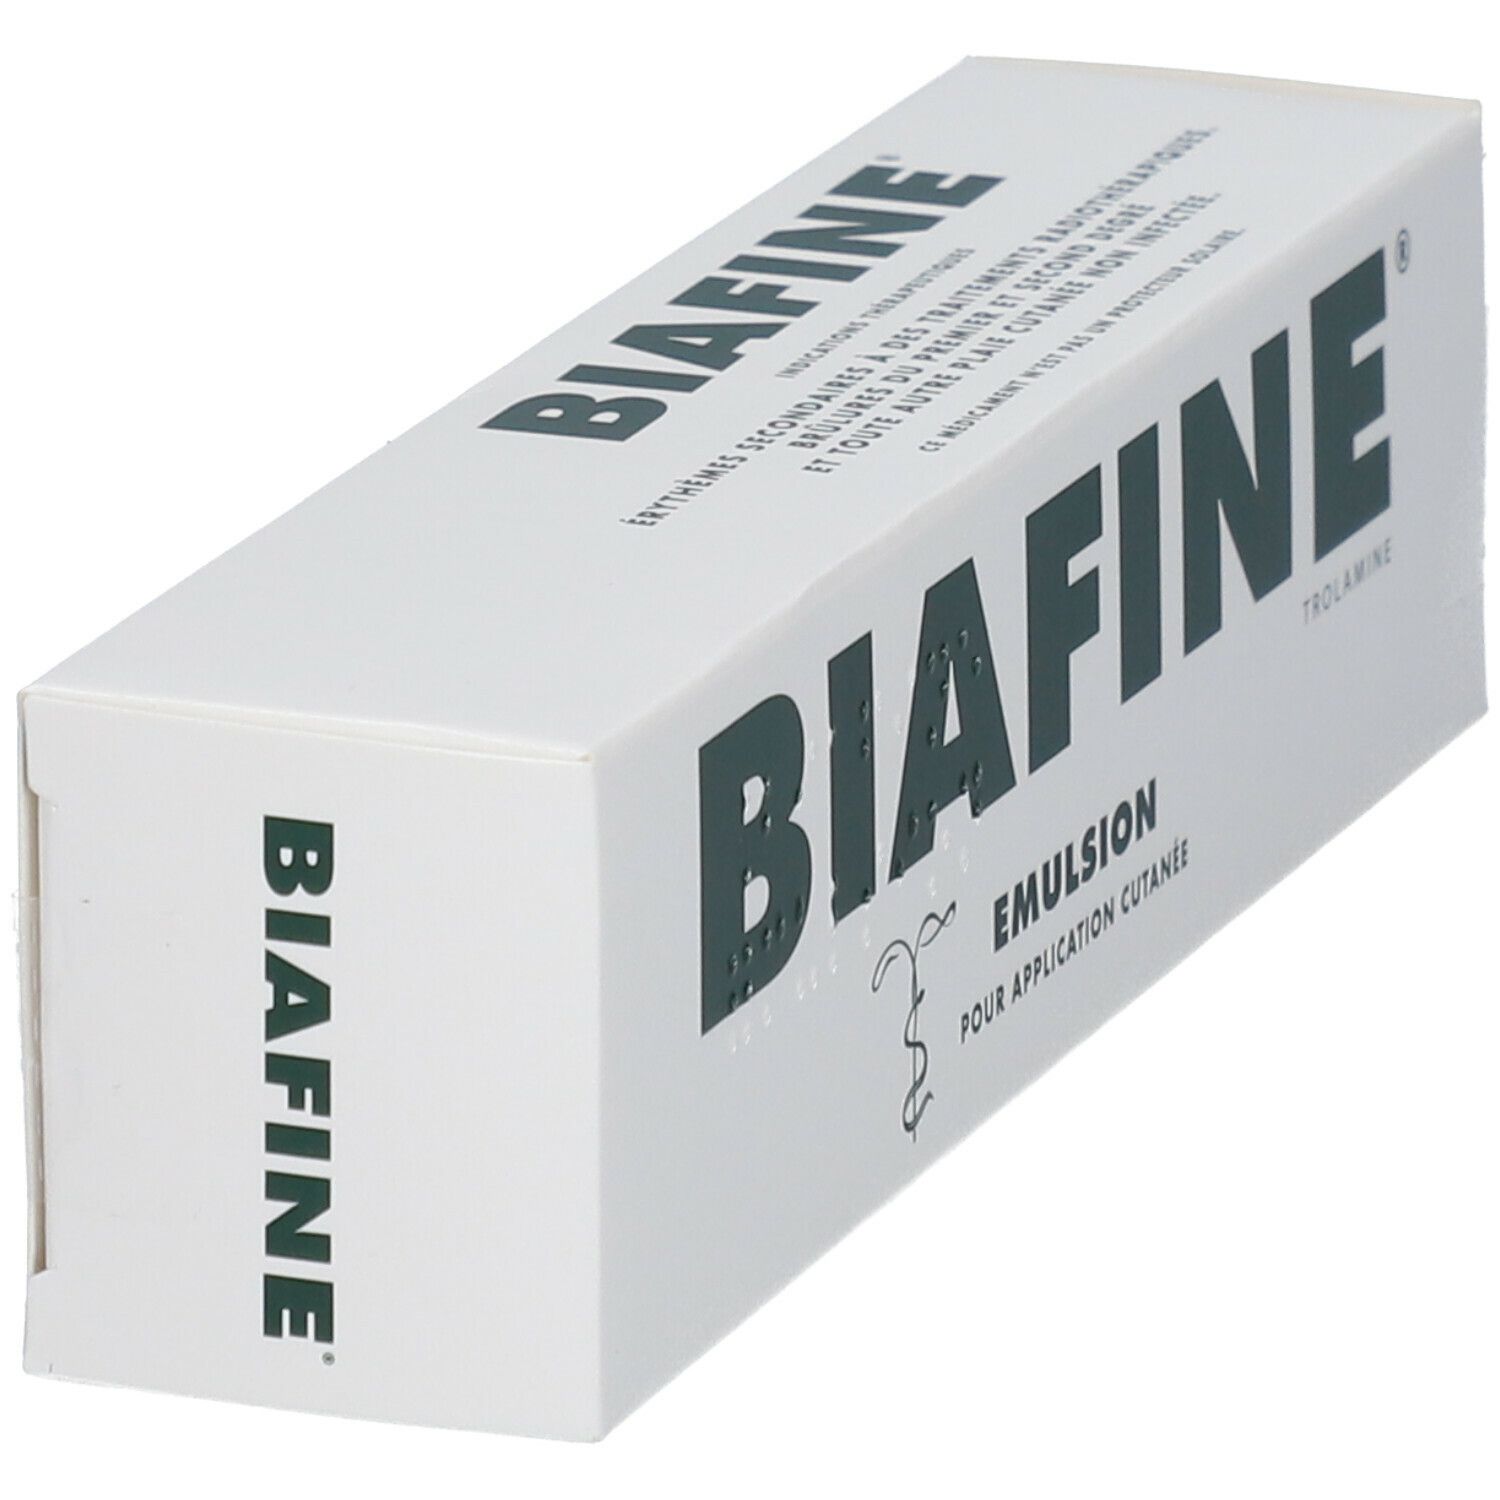 BIAFINE - Trolamine - Posologie